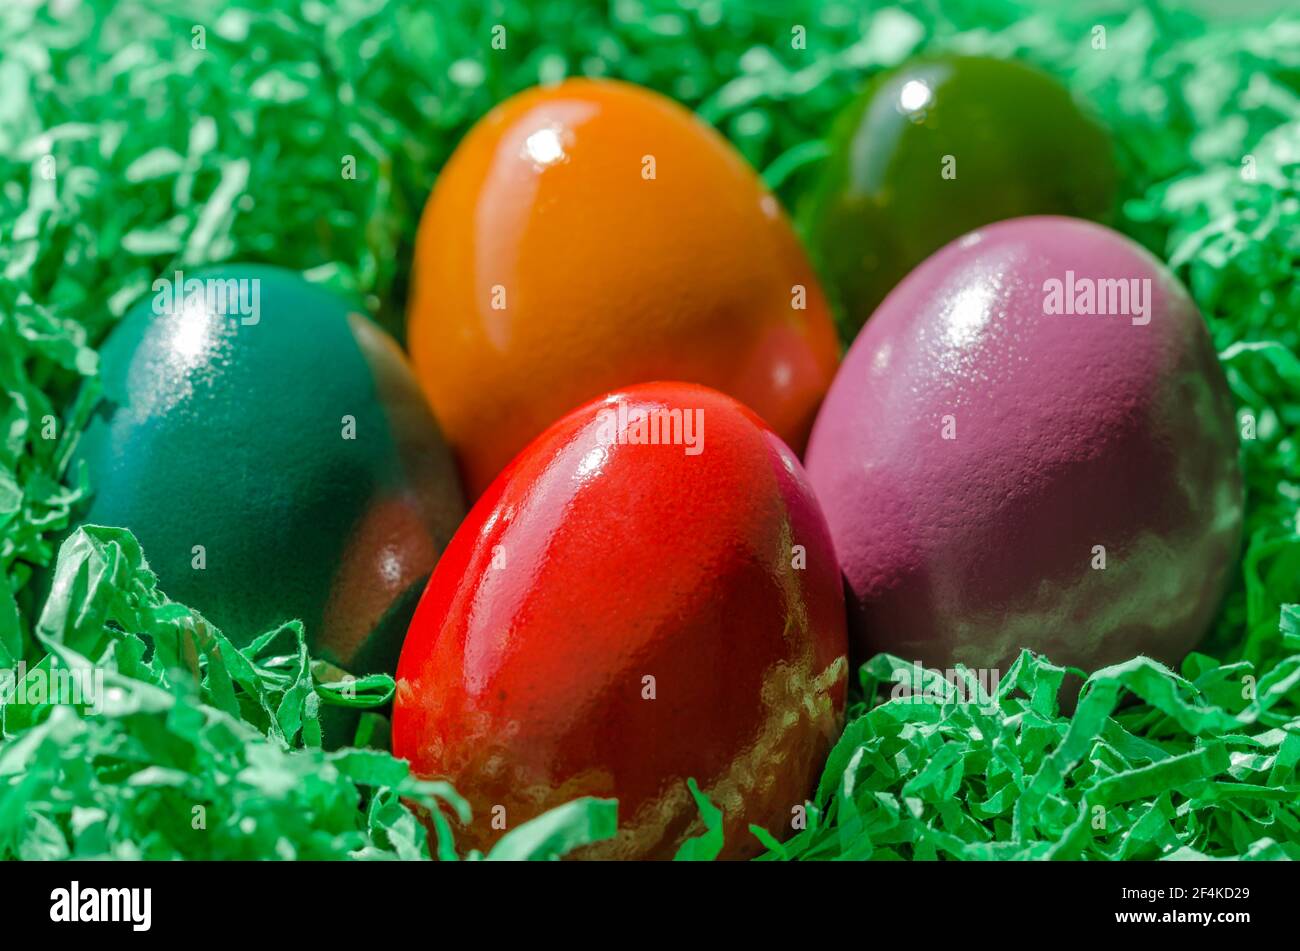 Nido de Pascua con huevos de Pascua multicolores. Huevos de Pascua dispuestos en un nido, hecho de papel verde triturado. Grupo de huevos duros y teñidos de colores. Foto de stock